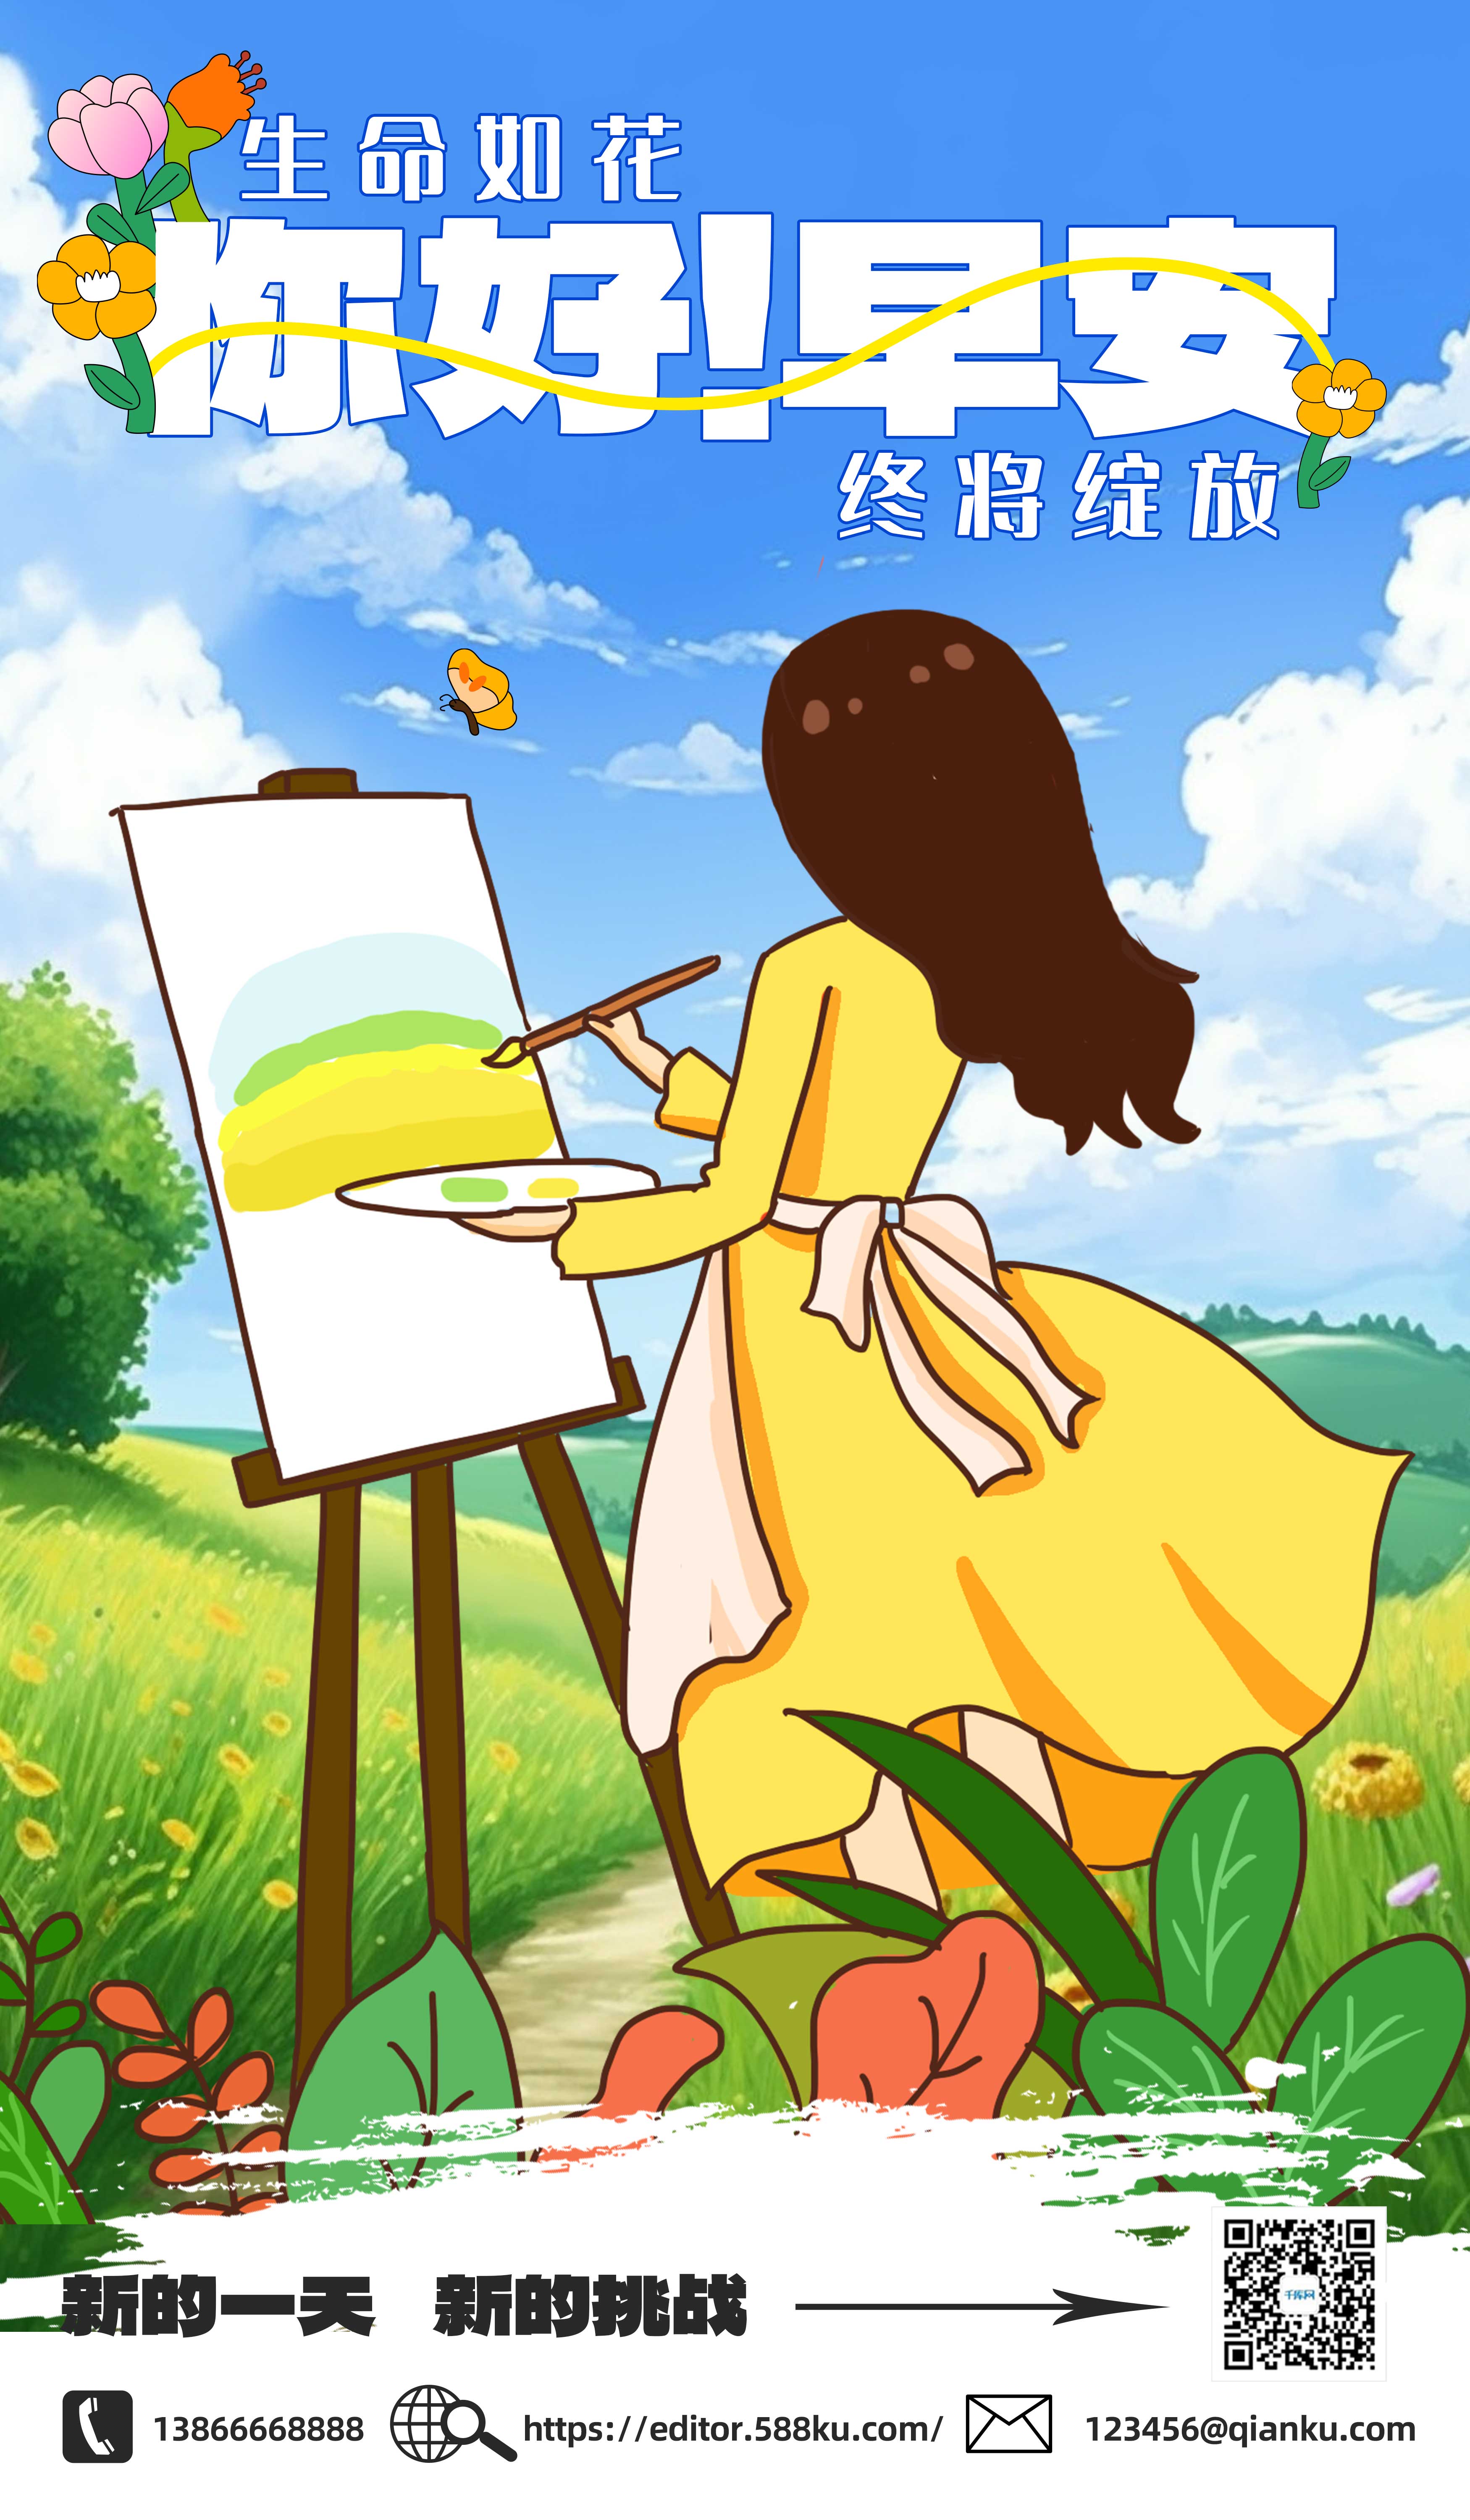 早安图画画女孩花朵黄色卡通插画海报图片